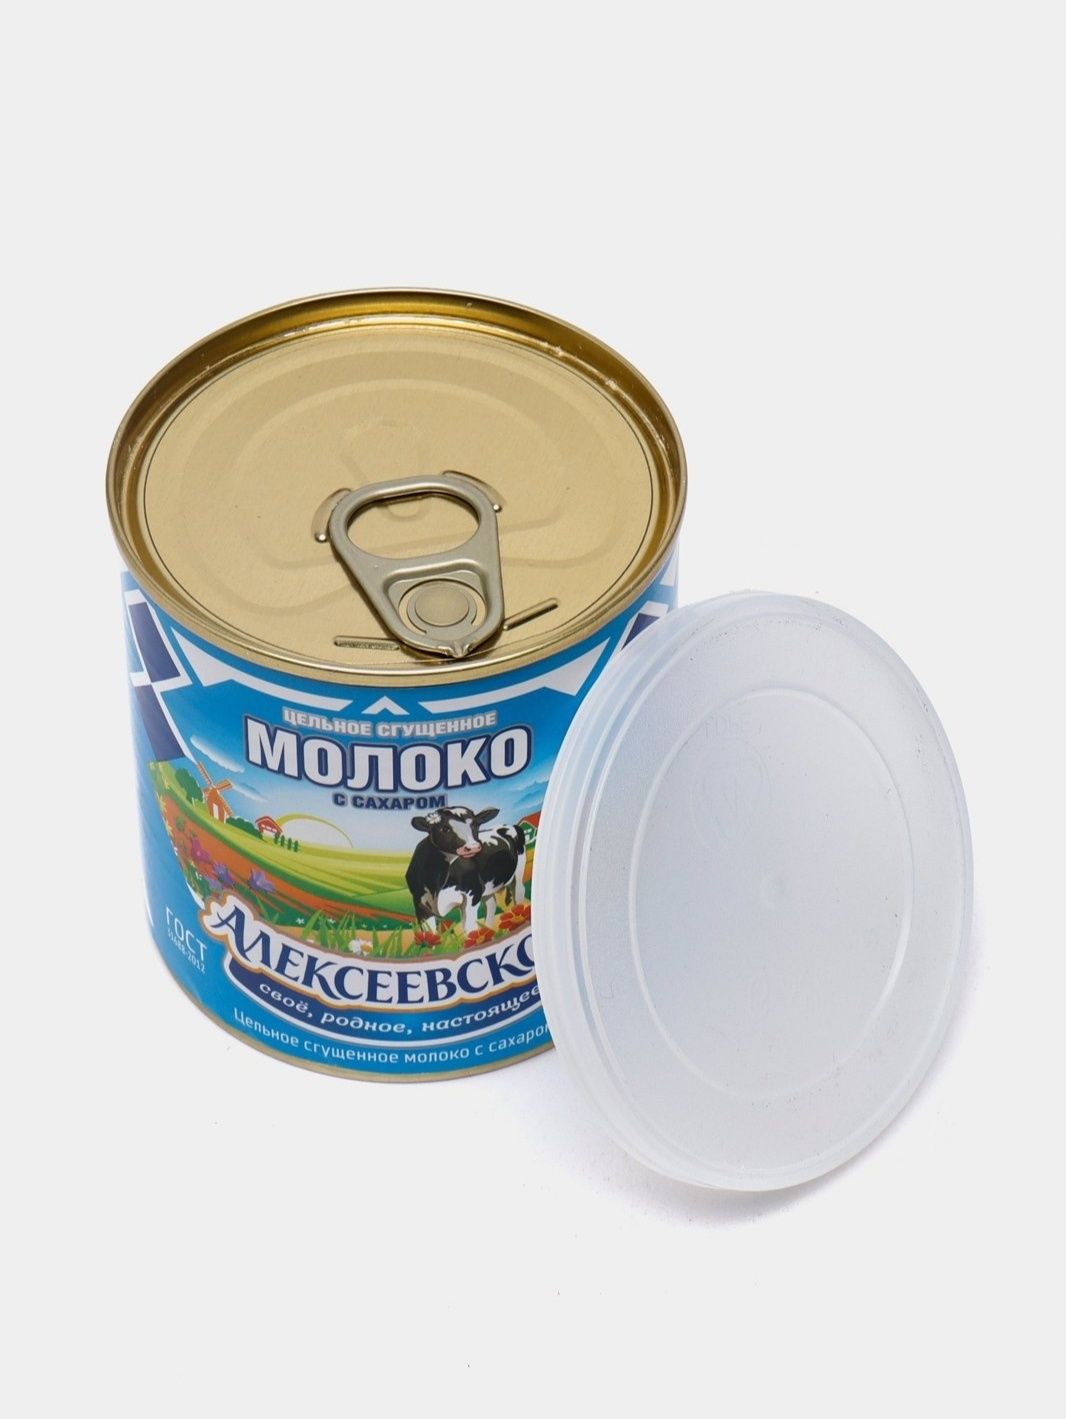 Сгущённое молоко Алексеевское. 360 гр.